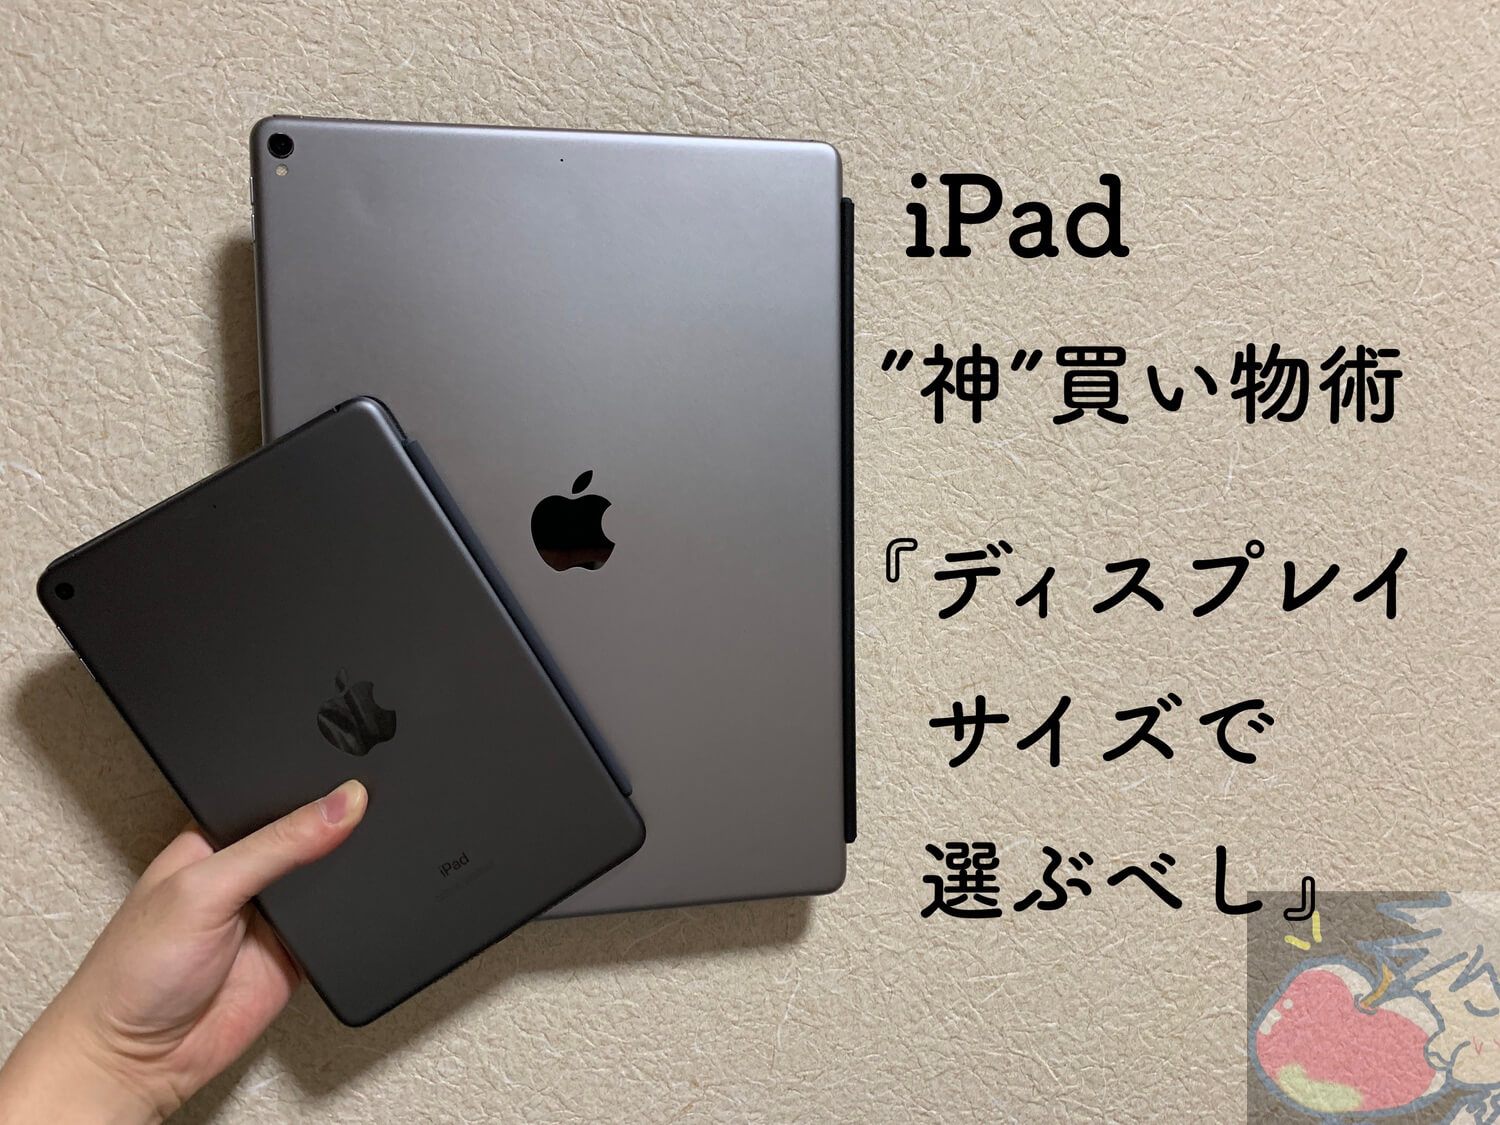 【2019】iPad”神”買い物術「ディスプレイサイズで選ぶべし」